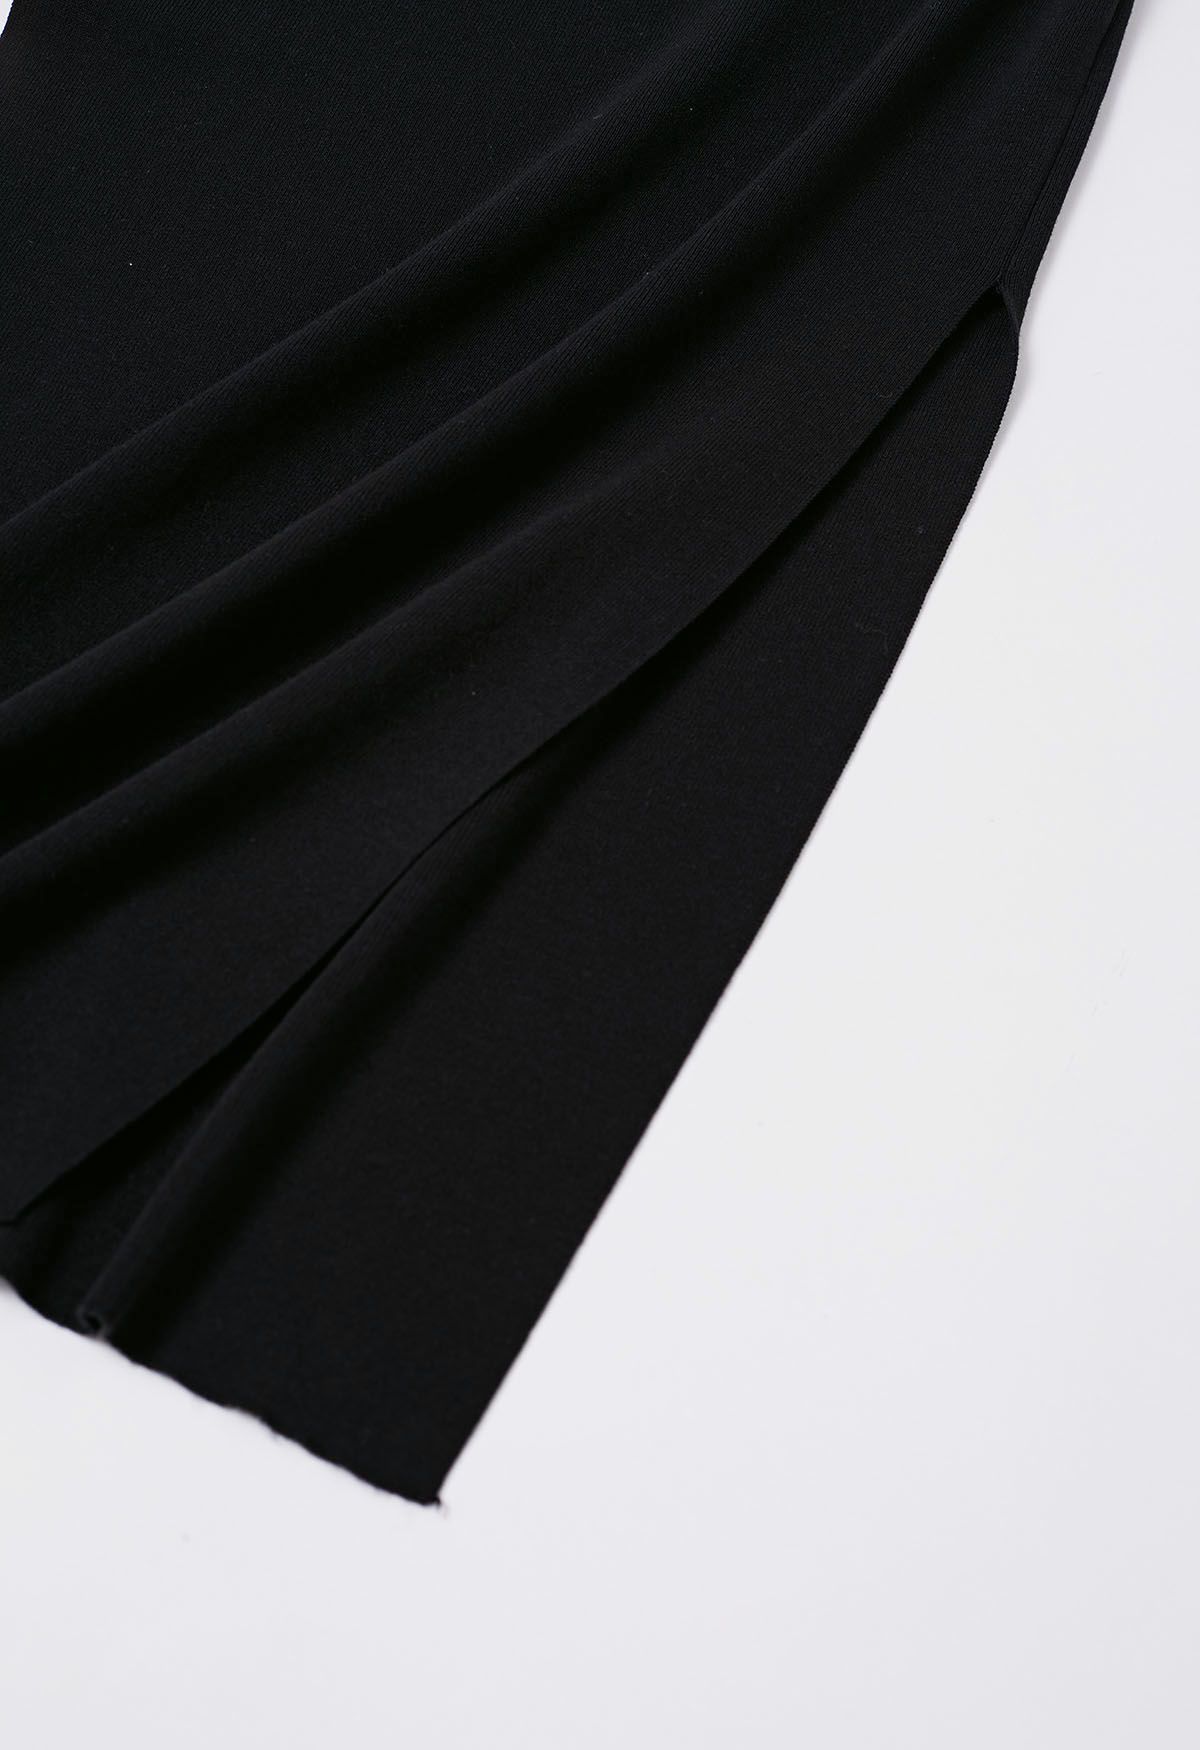 الجانب BOWKNOT العنق Bodycon فستان متماسكة باللون الأسود